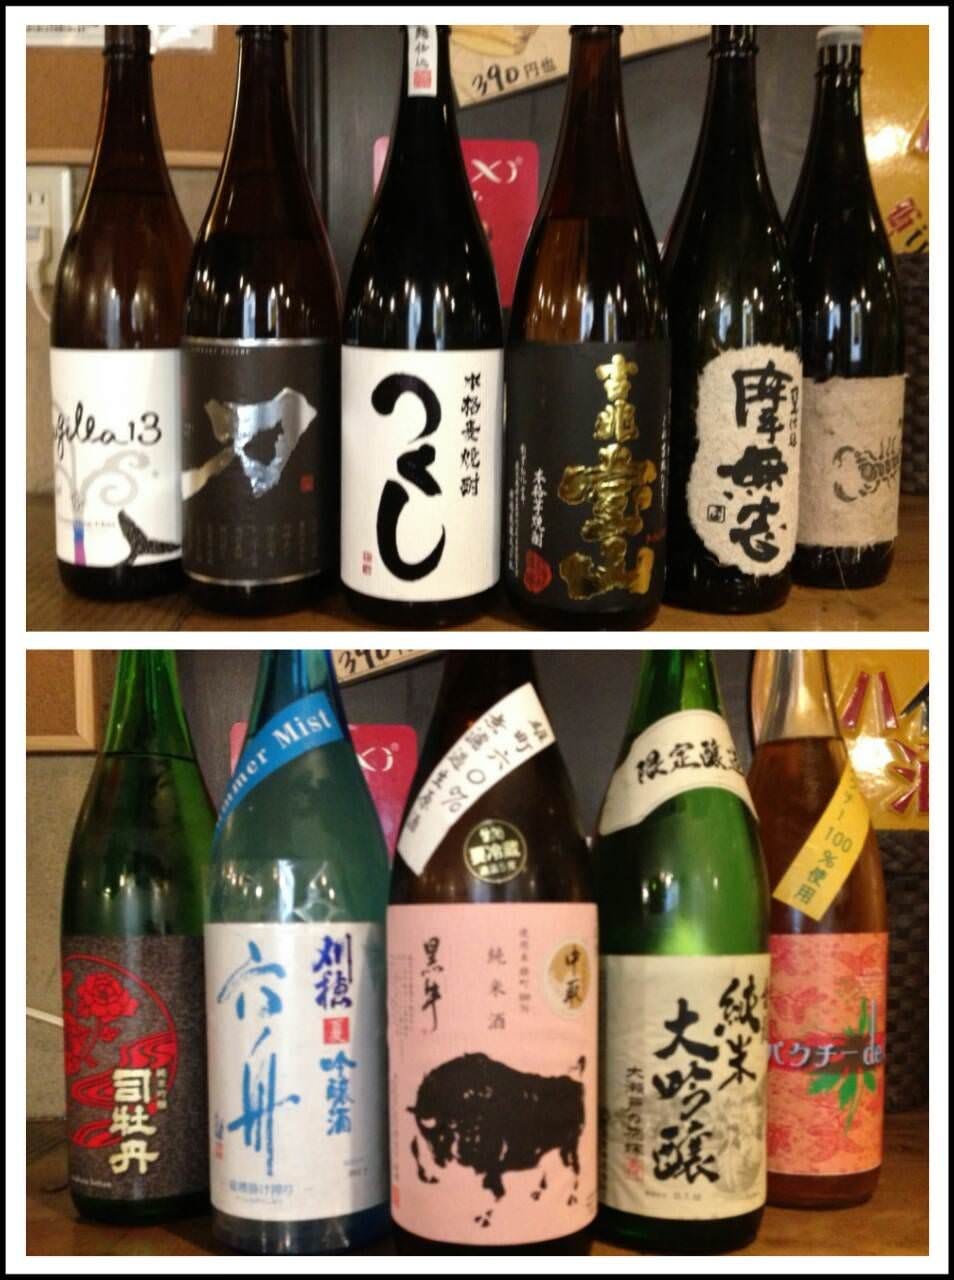 今月のおすすめの日本酒・焼酎です!